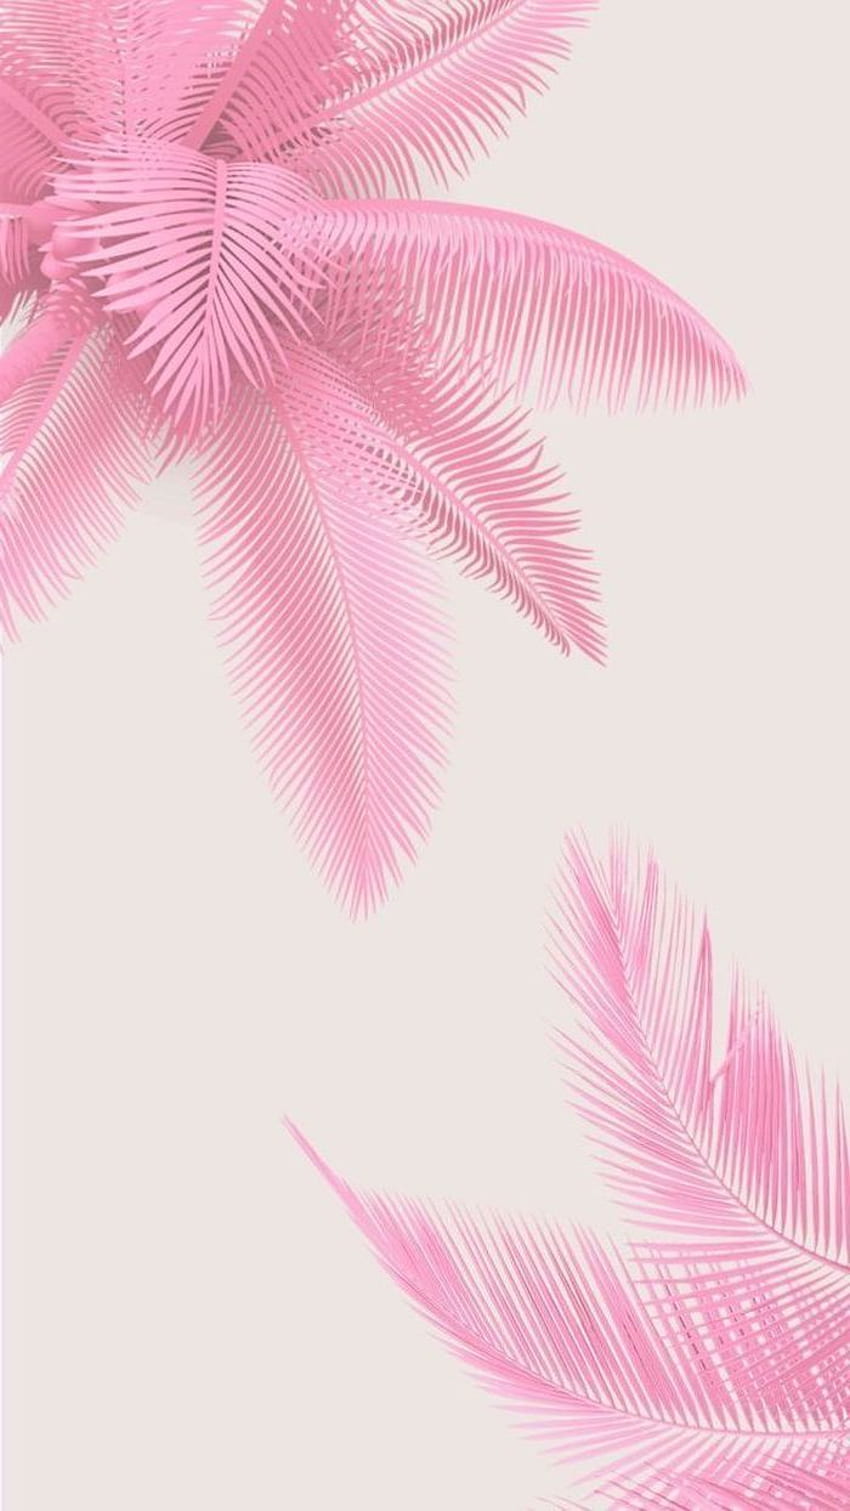 Bức hình nền Pink Palm Leaves Drawing mang lại cho bạn những cảm giác của một kỳ nghỉ tuyệt vời trên bãi biển, với phong cảnh nhiệt đới vô cùng tuyệt đẹp. Hãy chiêm ngưỡng cây cọ màu hồng rực rỡ và ánh nắng vàng trải đều khắp nơi, để tâm hồn bạn được thư thái.